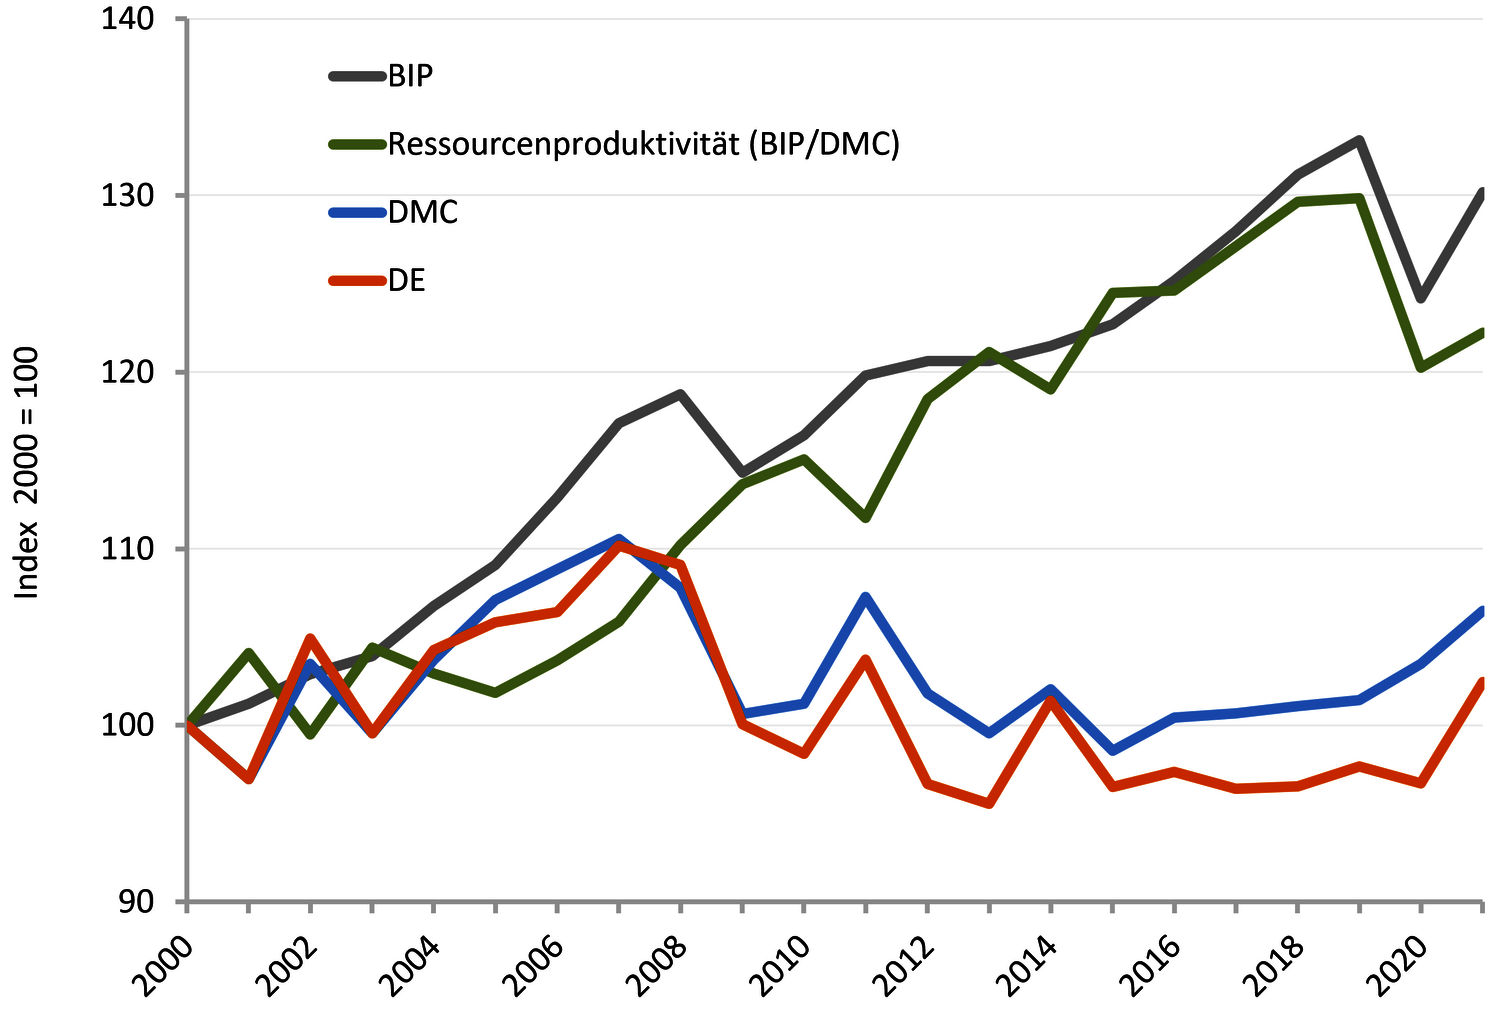 Abbildung mit Entwicklung des Ressourcenverbrauchs und des Bruttoinlandsprodukt in Österreich - 2000 bis 2016